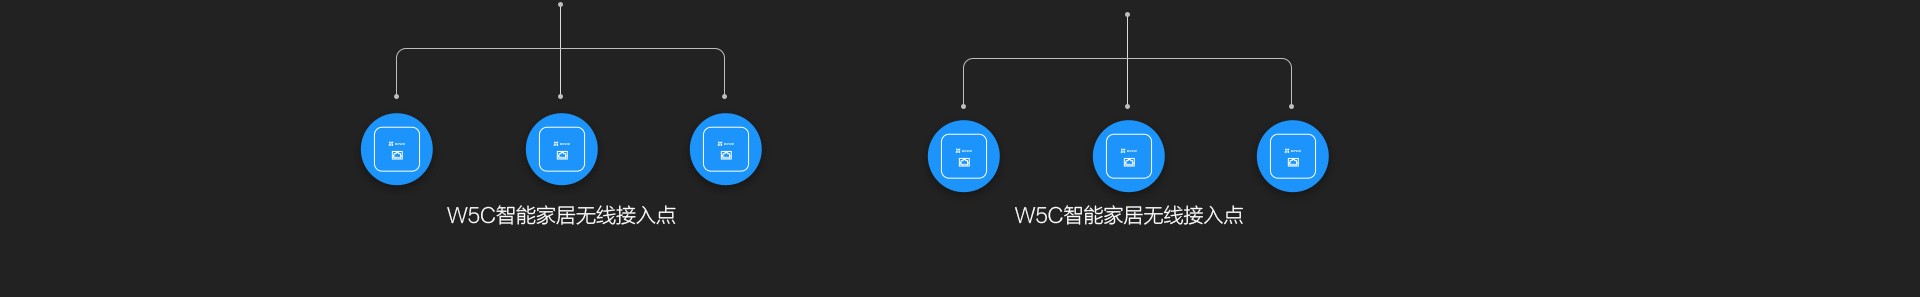 W5C+AP套包-web_23.jpg